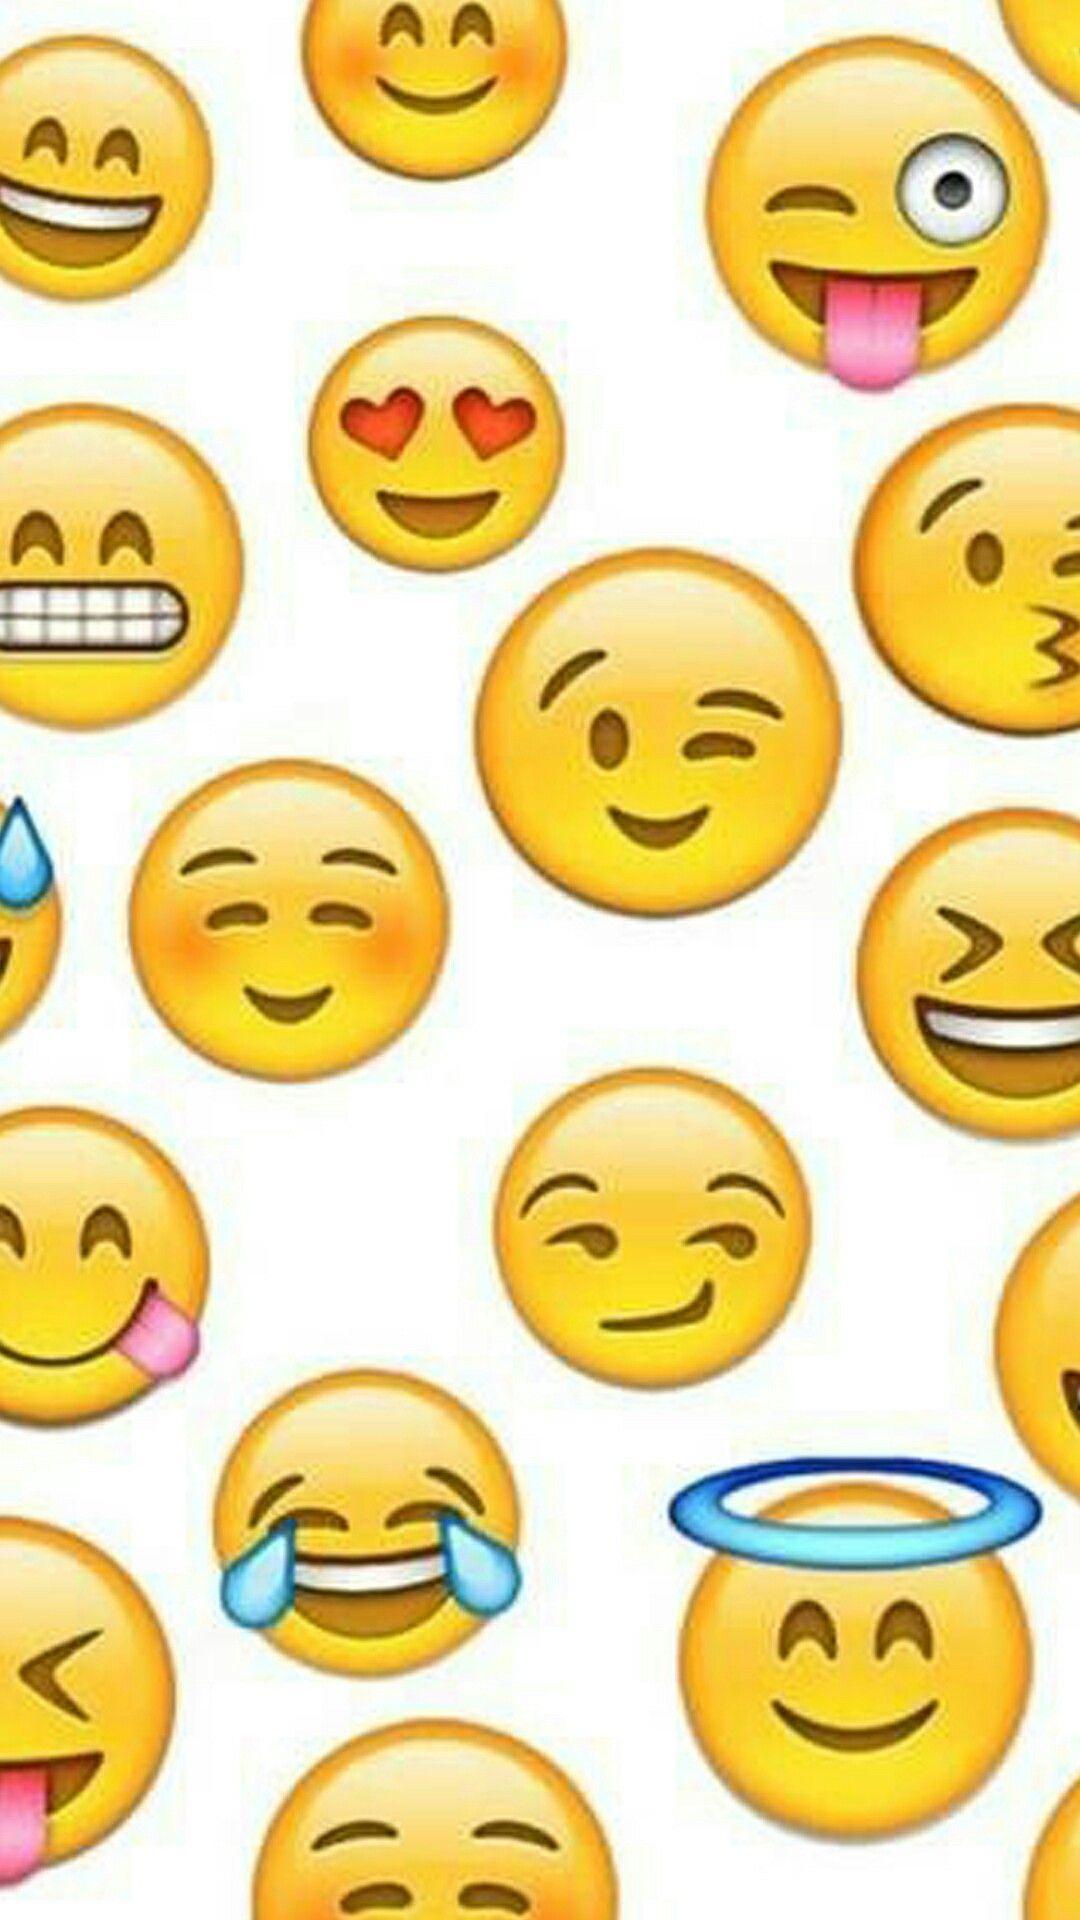 Emojis wallpaper. wallpaper / background. Emoji